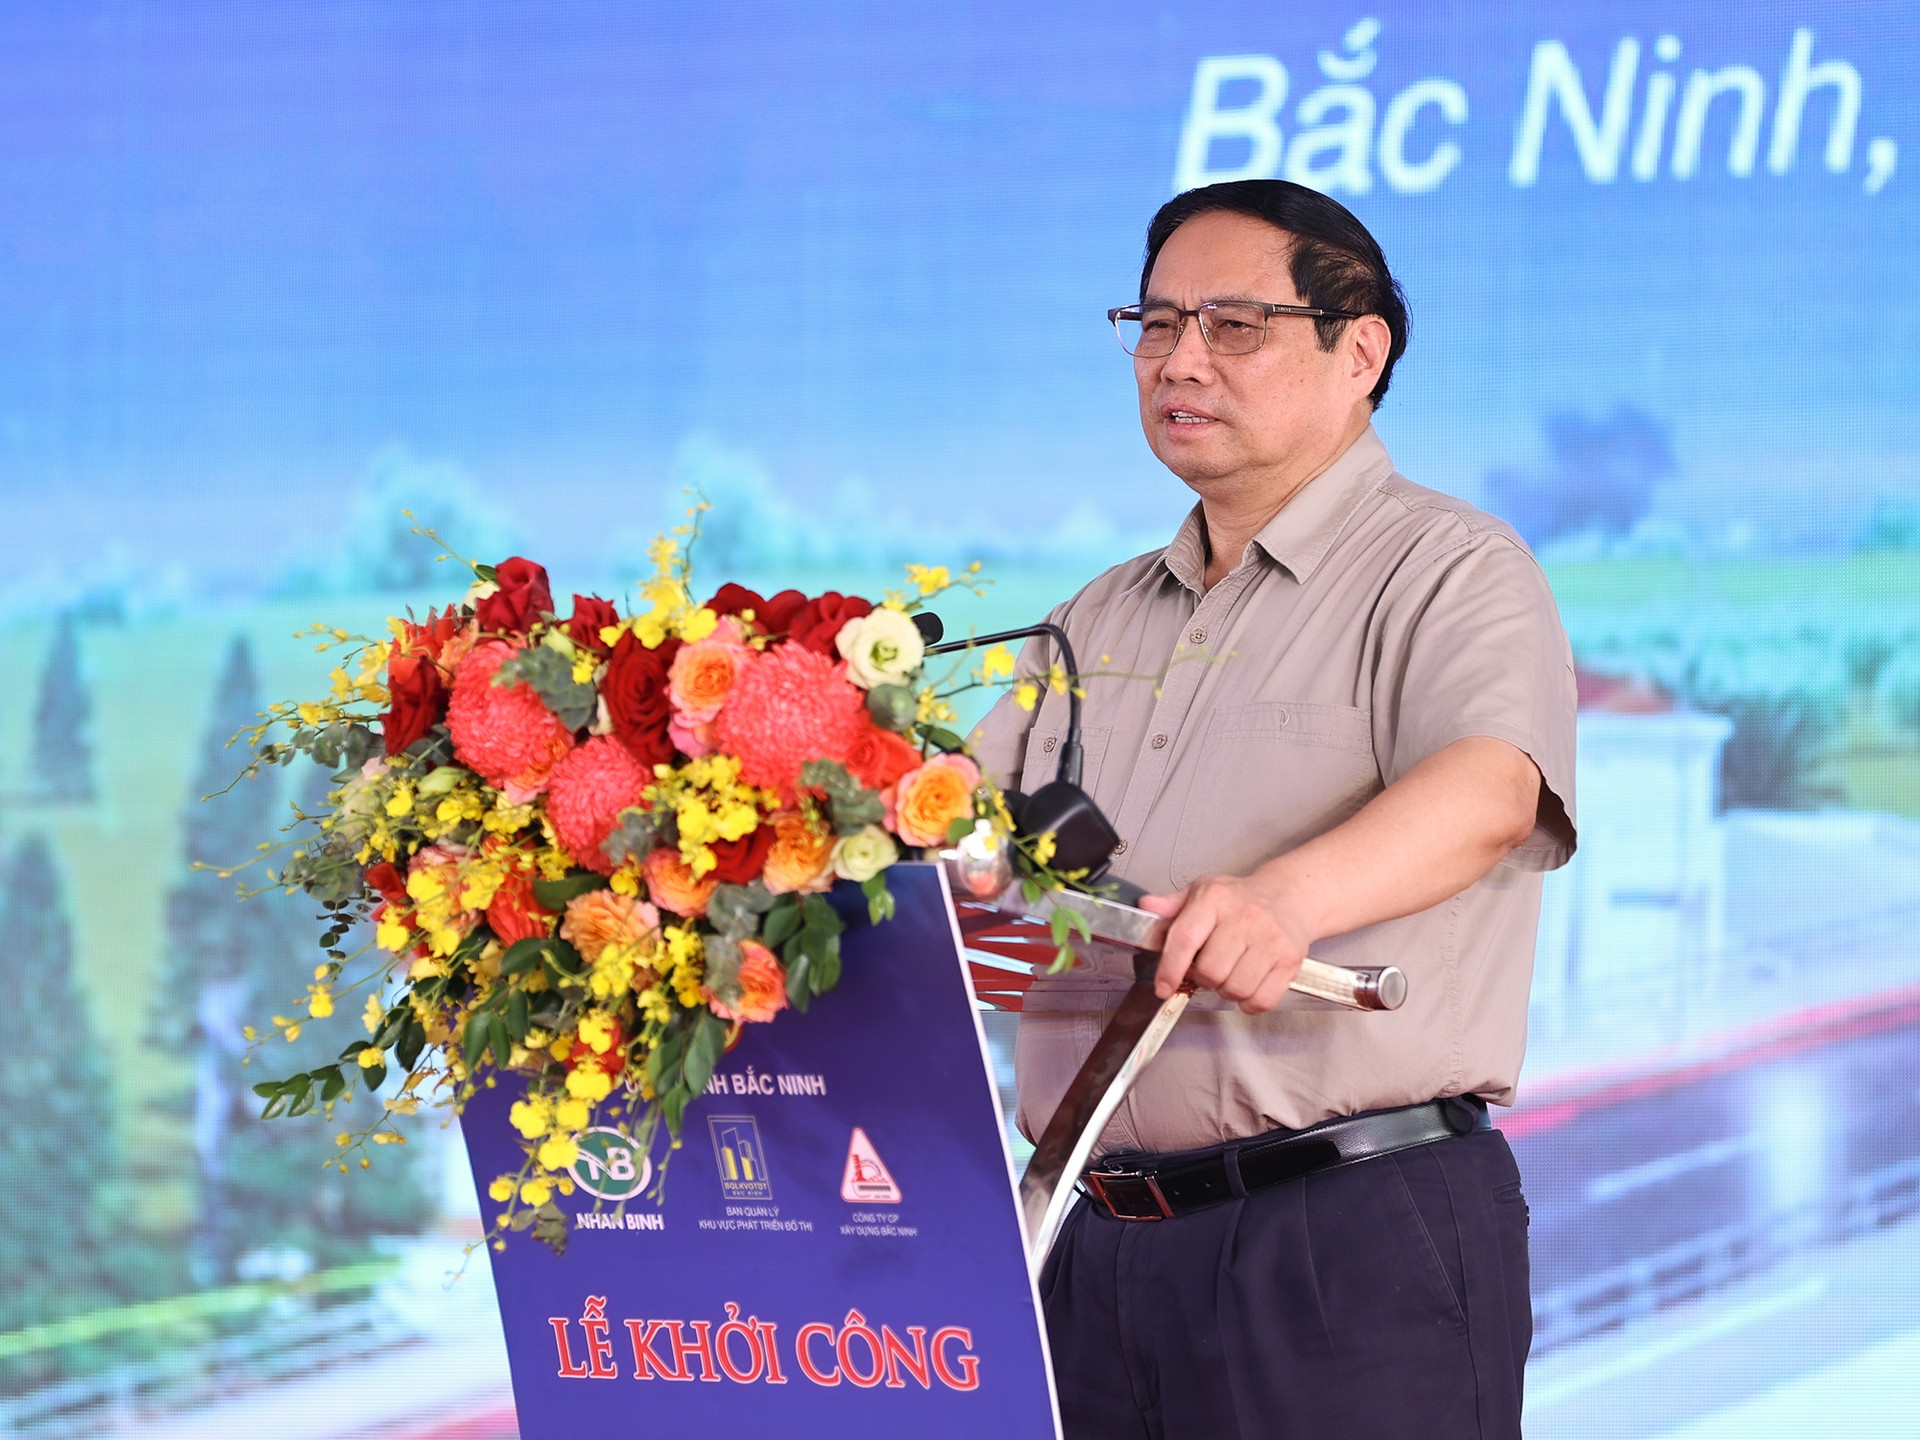 Thủ tướng dự lễ khởi công 3 tuyến đường có ý nghĩa lớn với Bắc Ninh và Hà Nội - Ảnh 2.